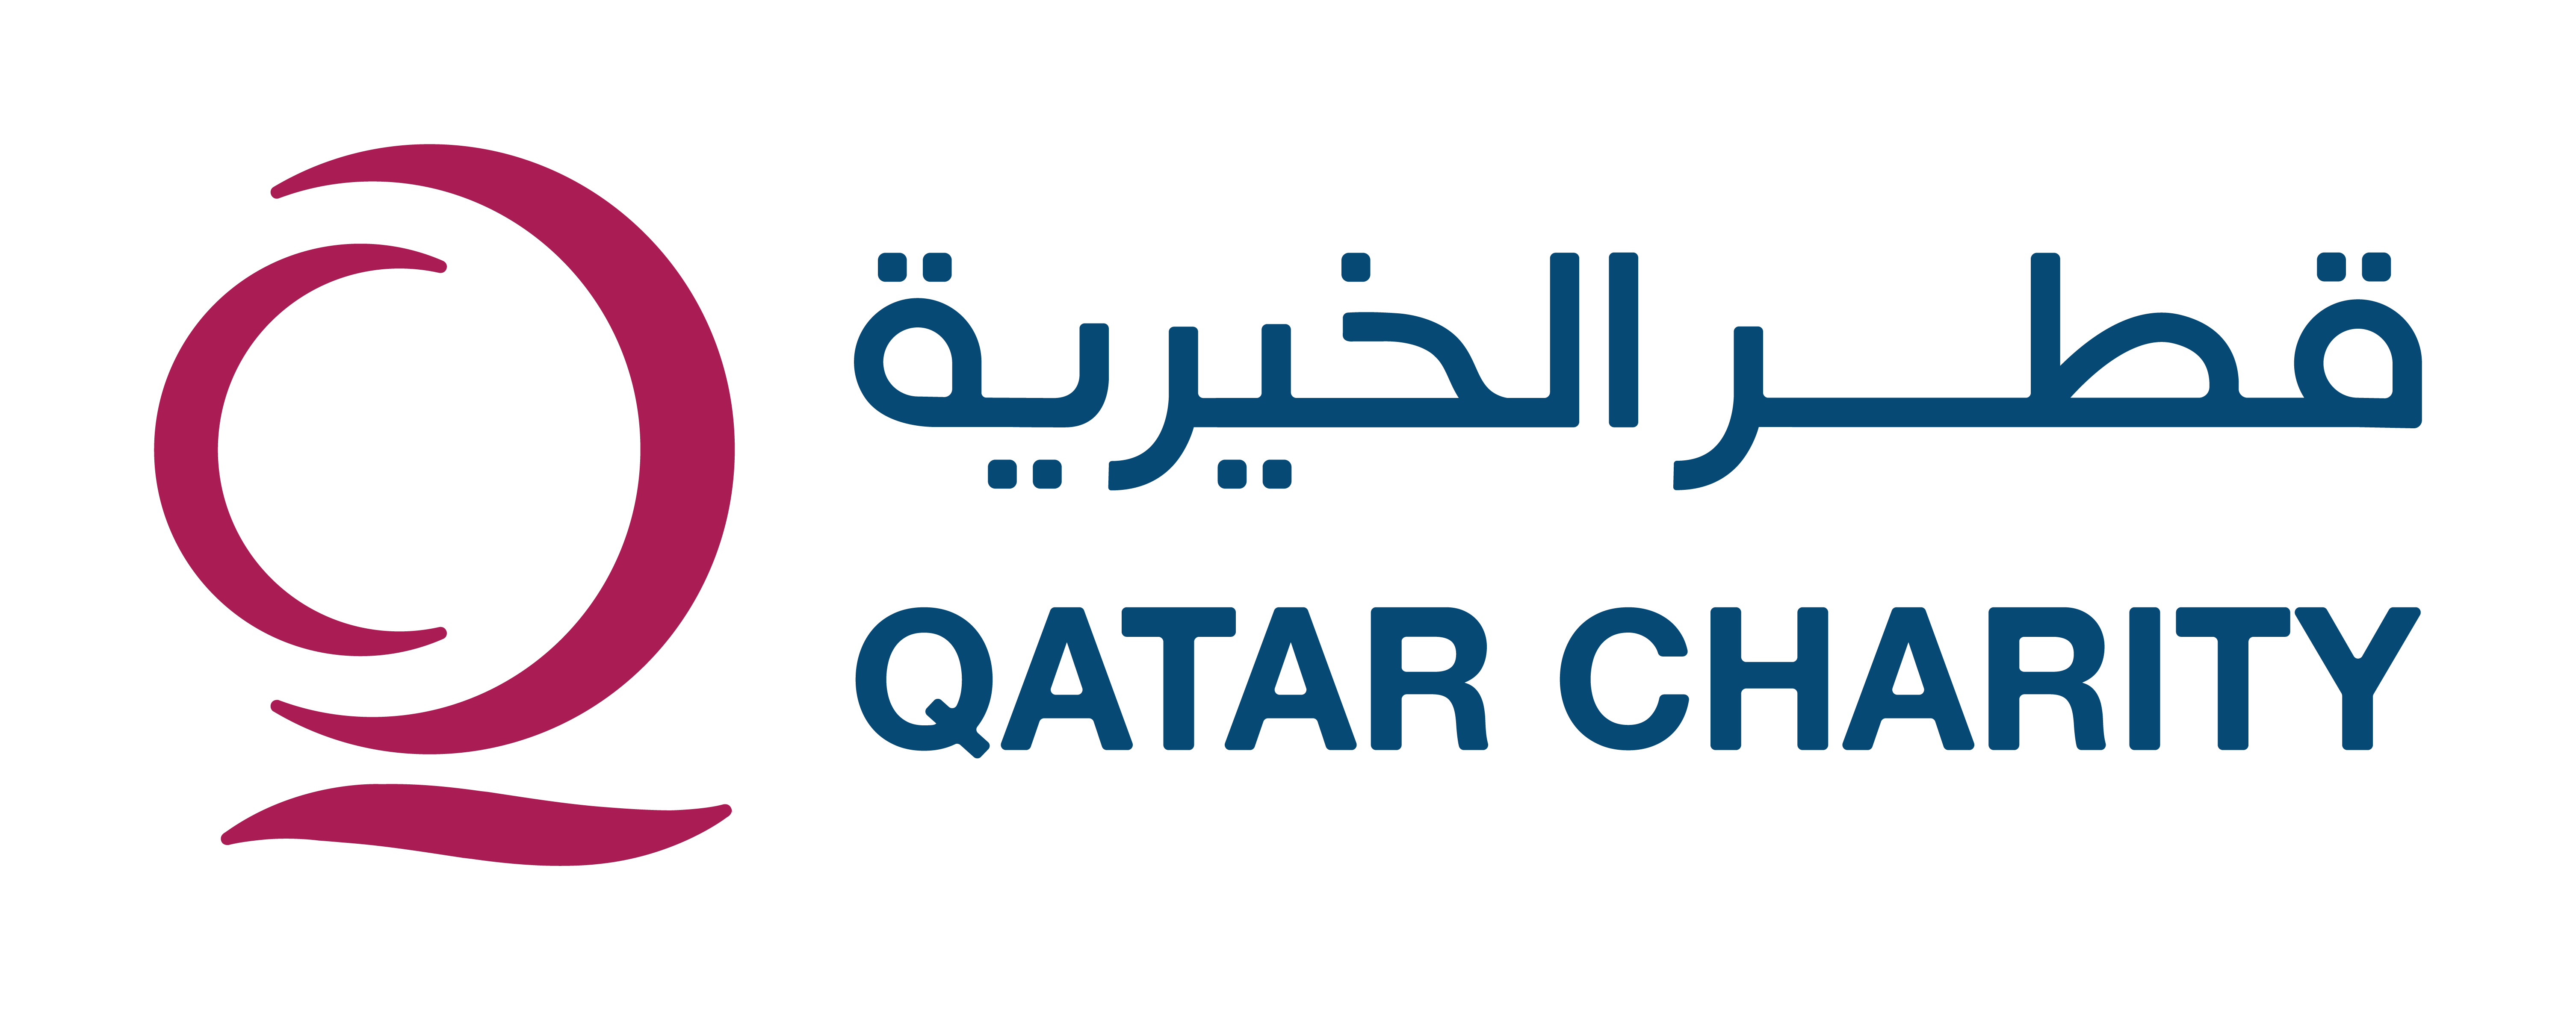 A-Qatar-Charity